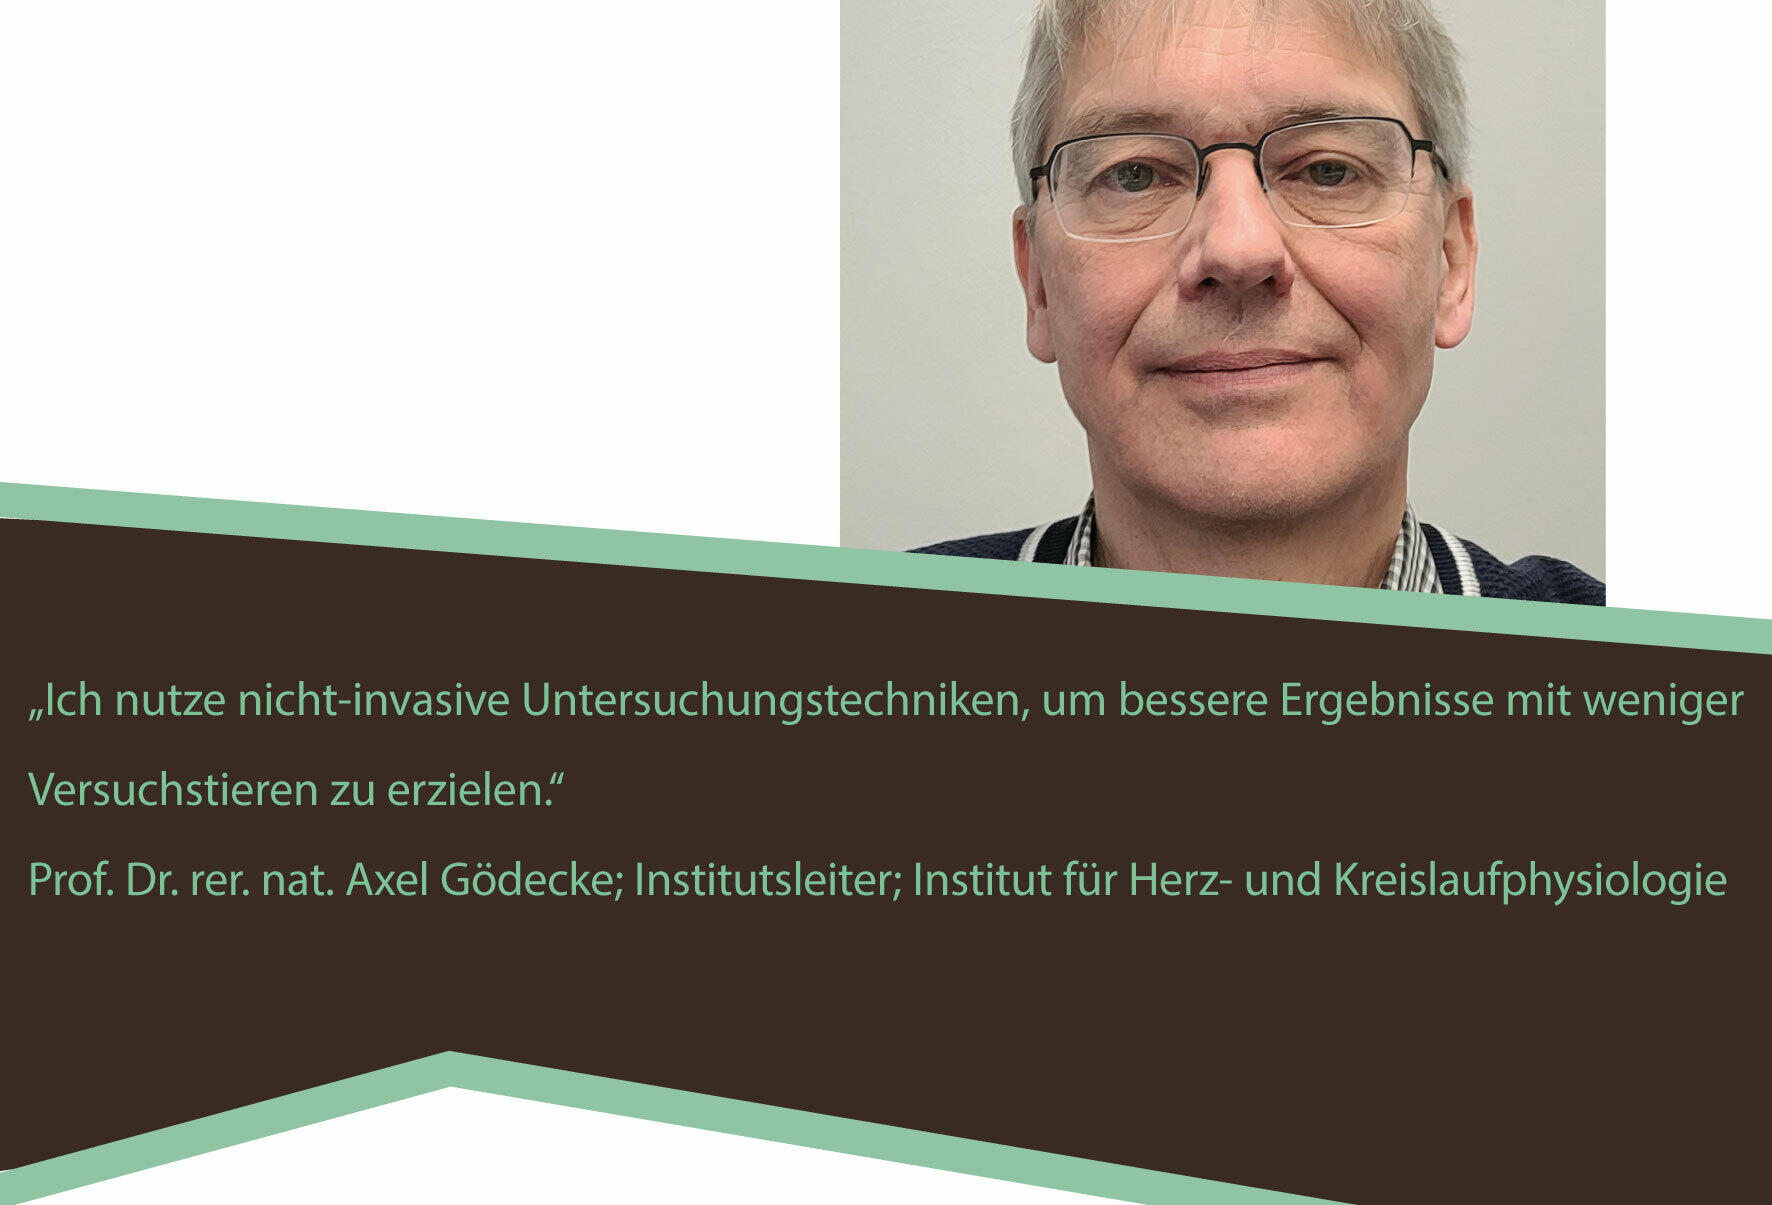 Statement von Prof. Goedecke